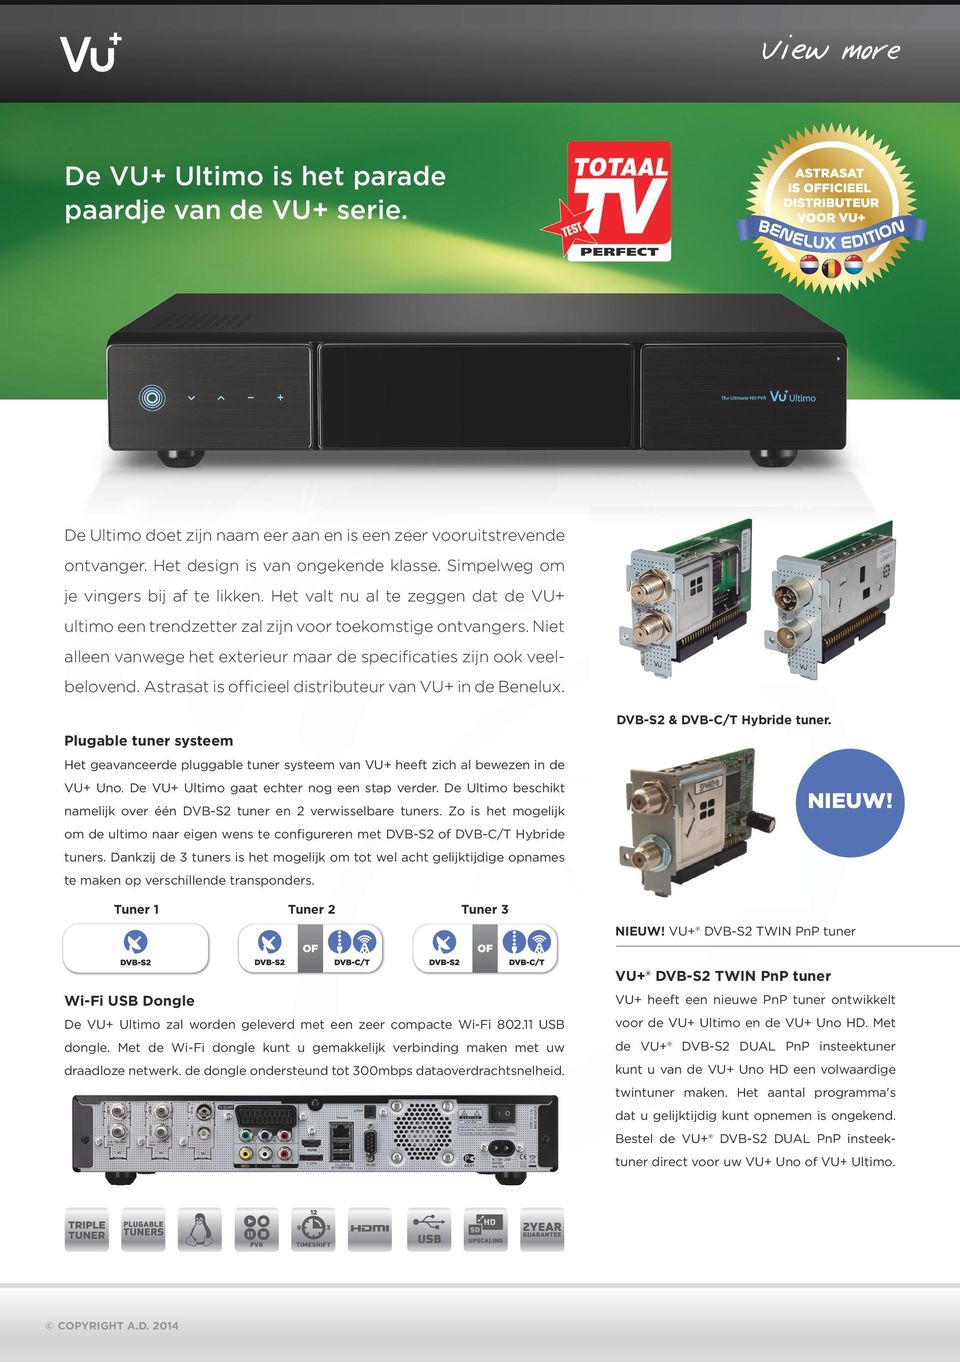 Niet alleen vanwege het exterieur maar de specificaties zijn ook veelbelovend. Astrasat is officieel distributeur van VU+ in de Benelux.